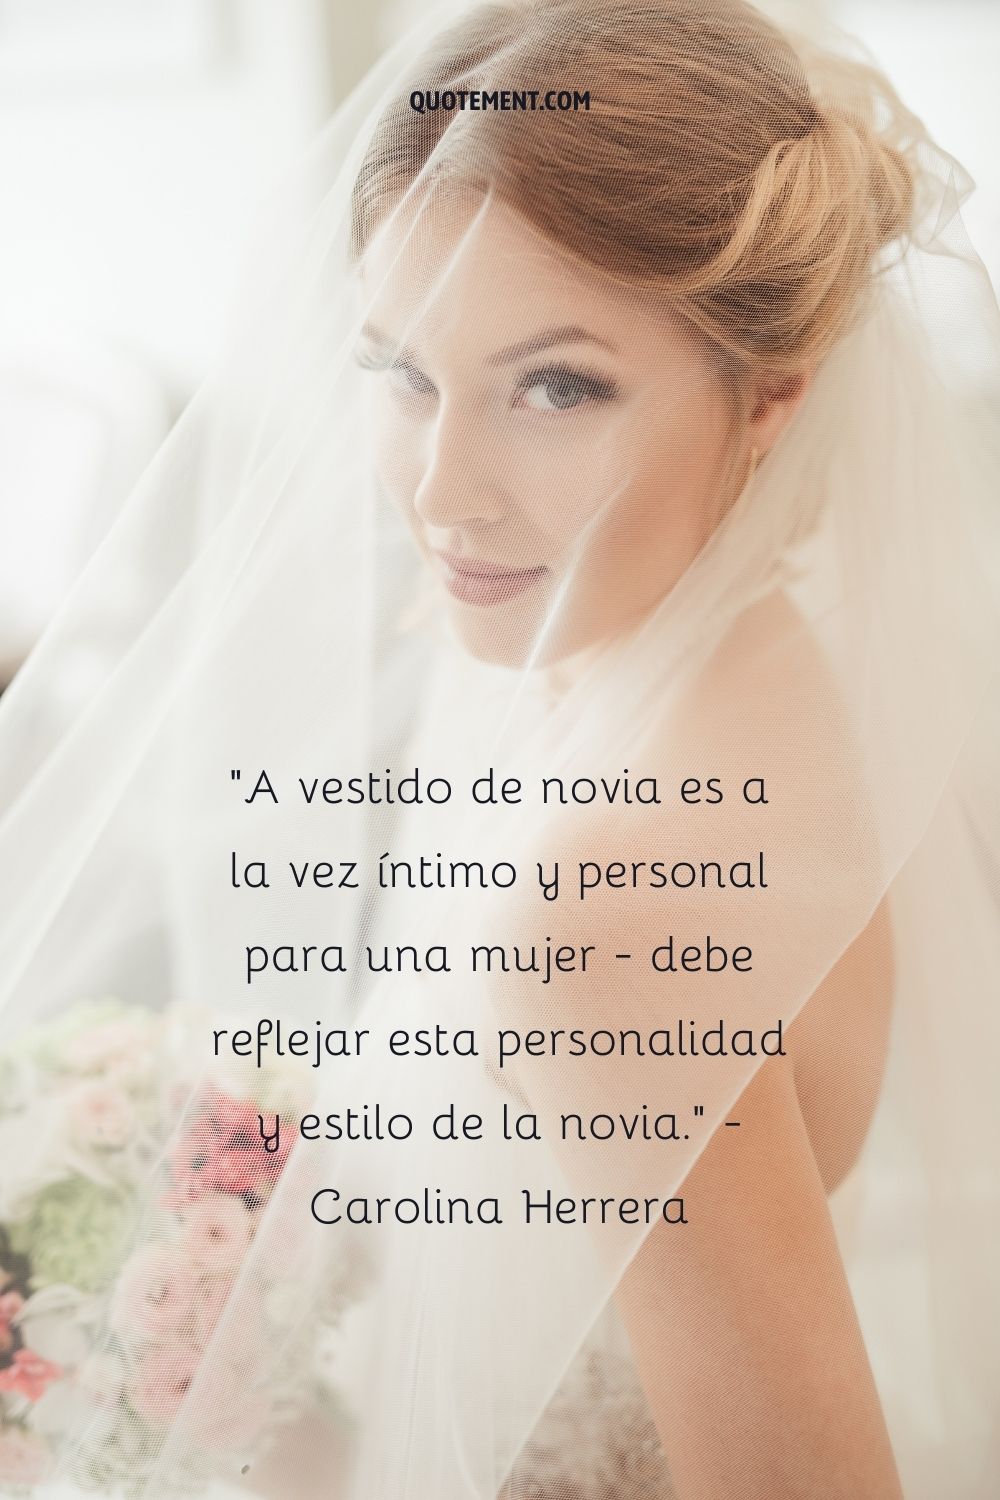 Un vestido de novia es a la vez íntimo y personal para una mujer: debe reflejar la personalidad y el estilo de la novia. - Carolina Herrera